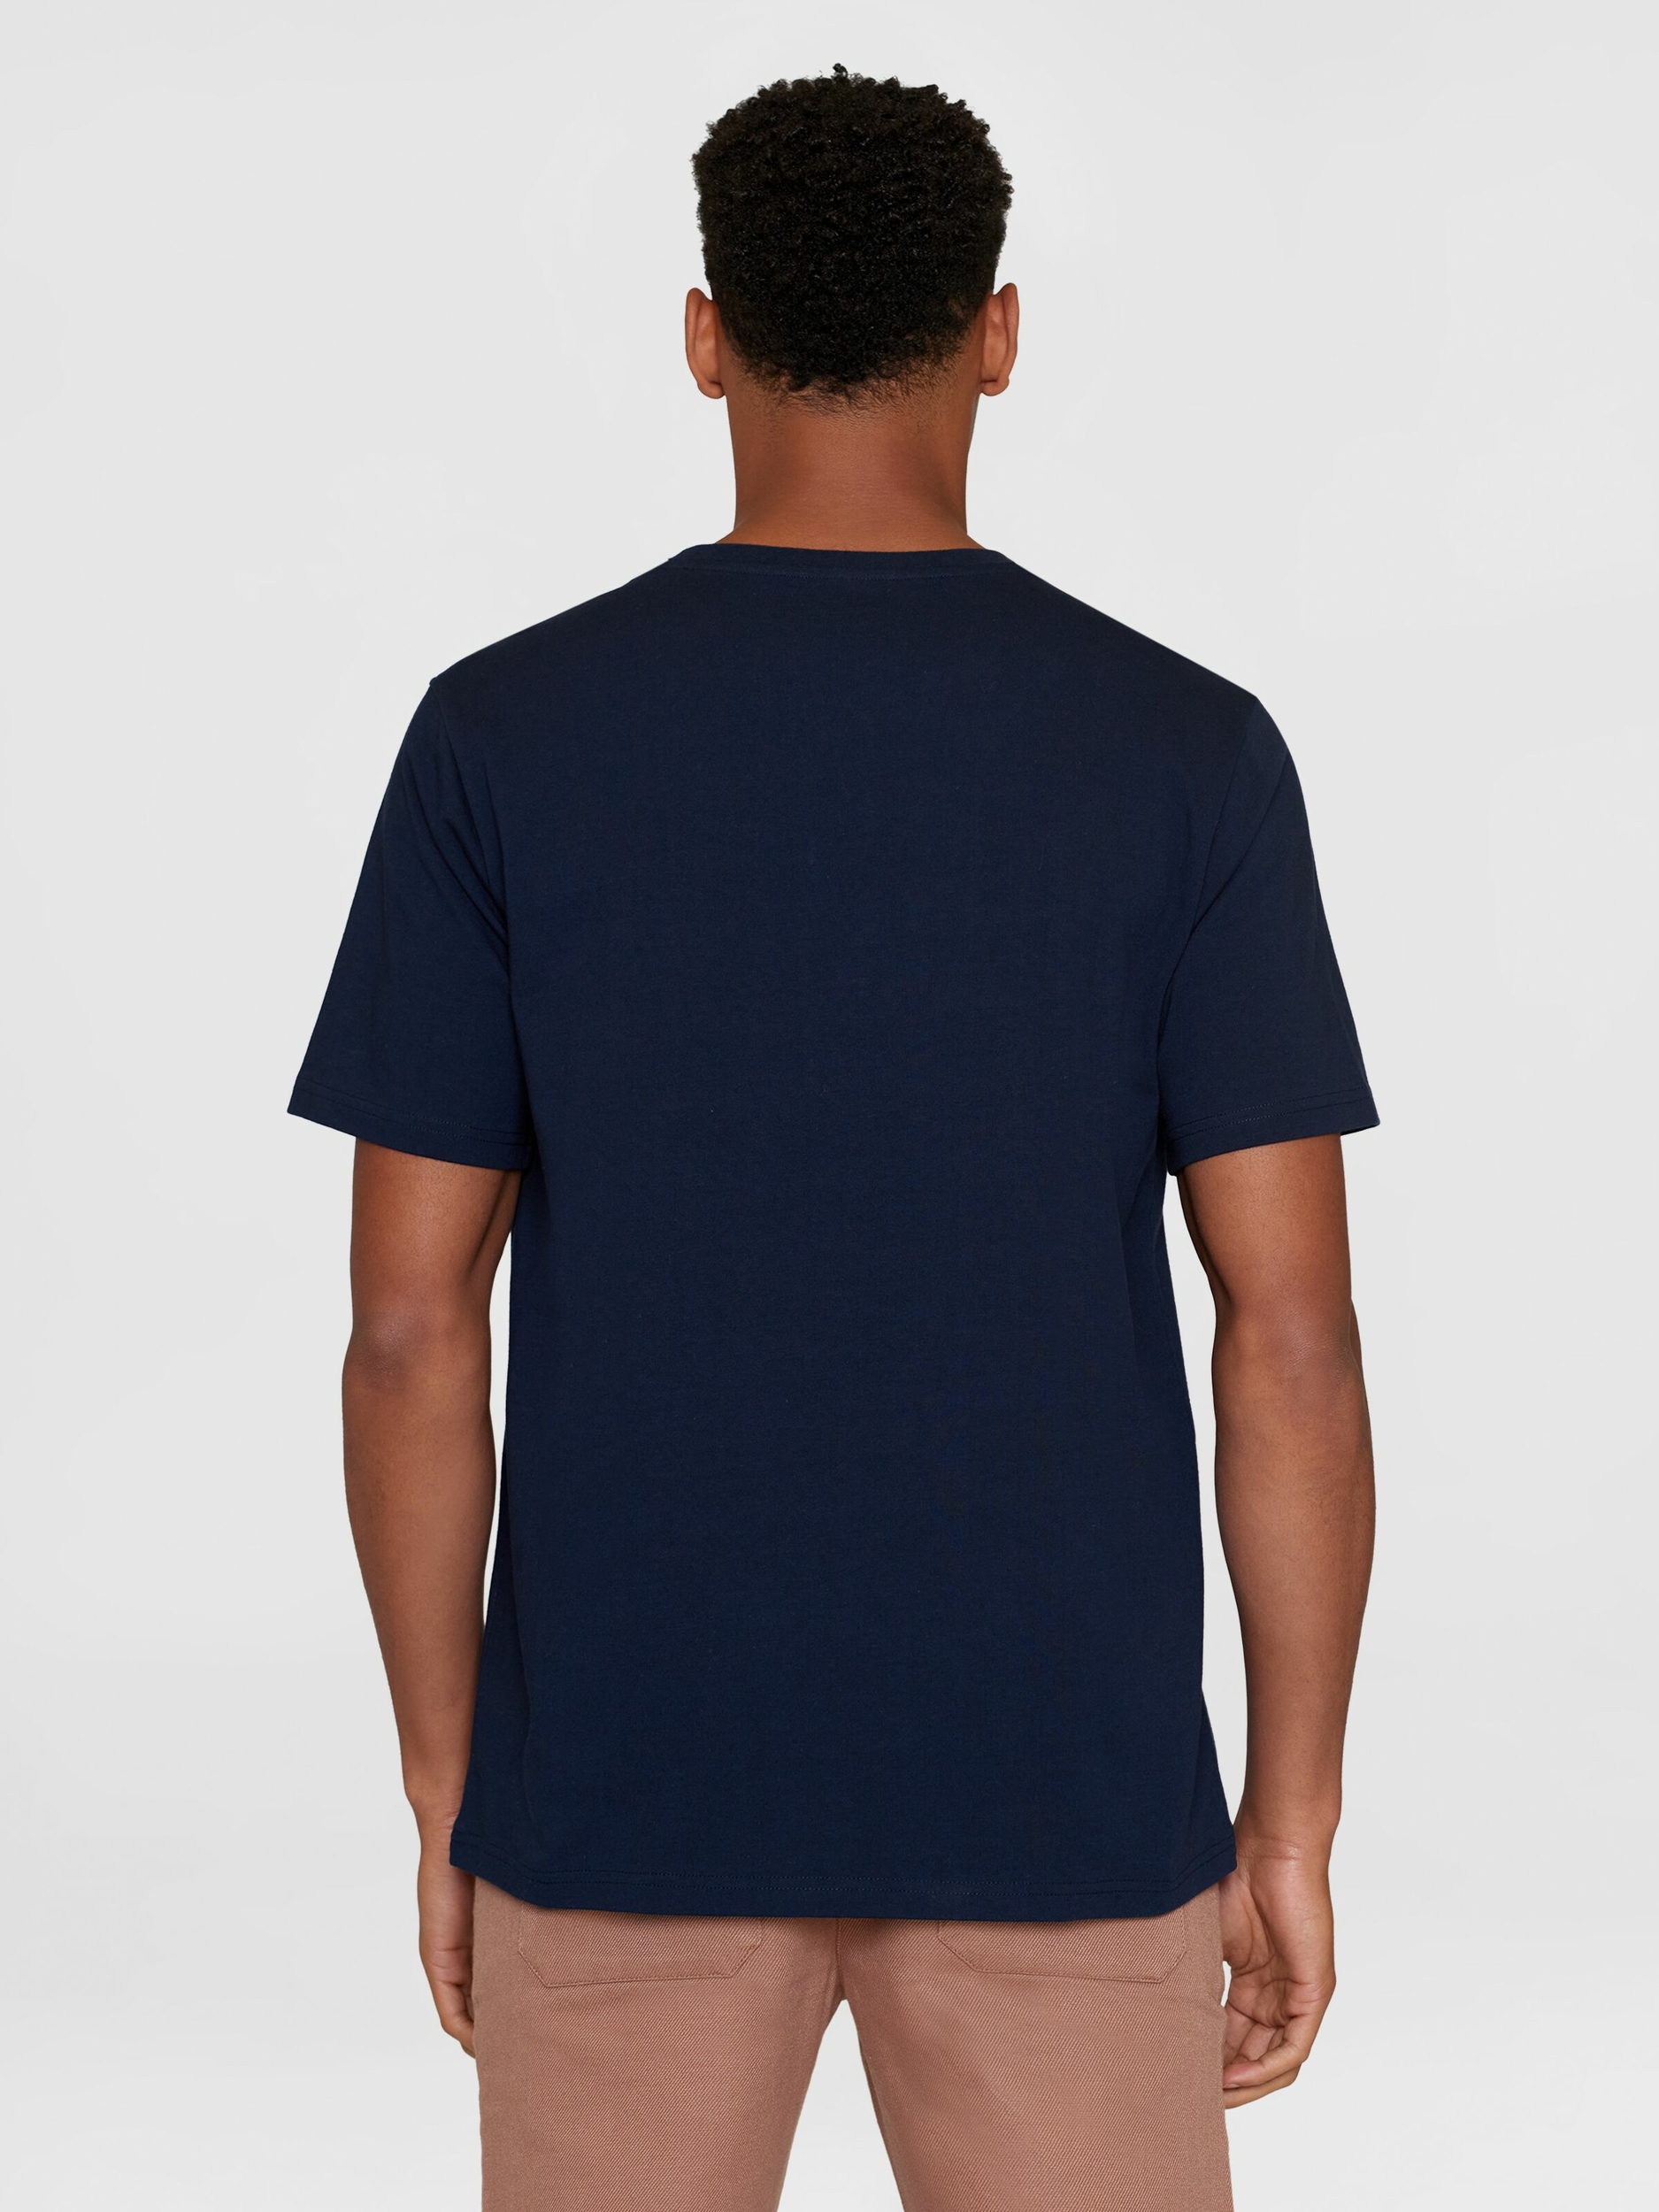 T-shirt Hibou cross stitch - bleu marine - coton biologique - Knowledge Cotton Apparel 02